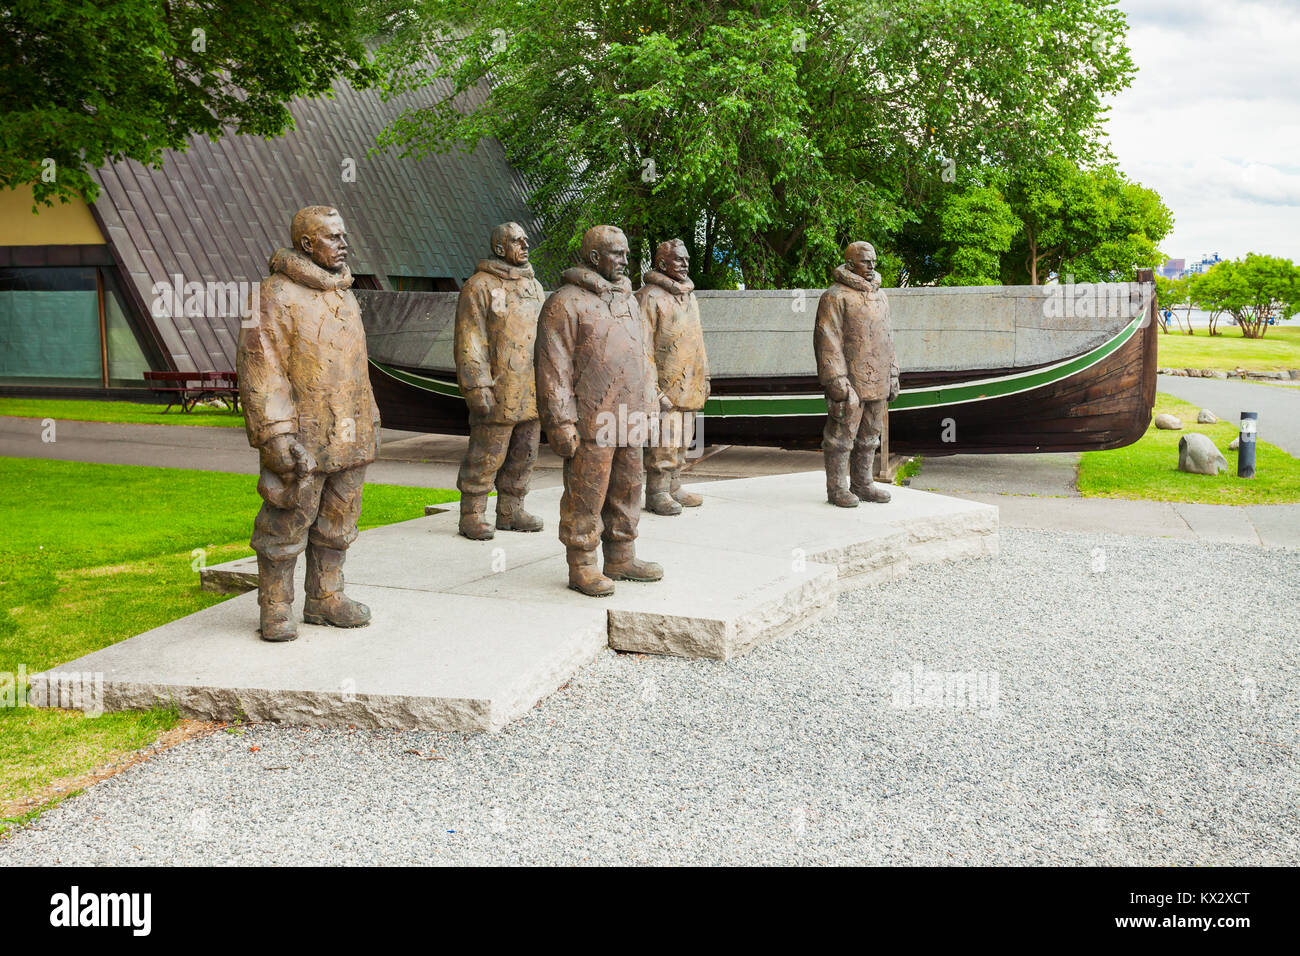 Roald Amundsen et son équipage monuments au Musée Fram, un musée de l'exploration polaire norvégien. Fram Musée situé sur Bygdoy à Oslo, Norvège. Banque D'Images